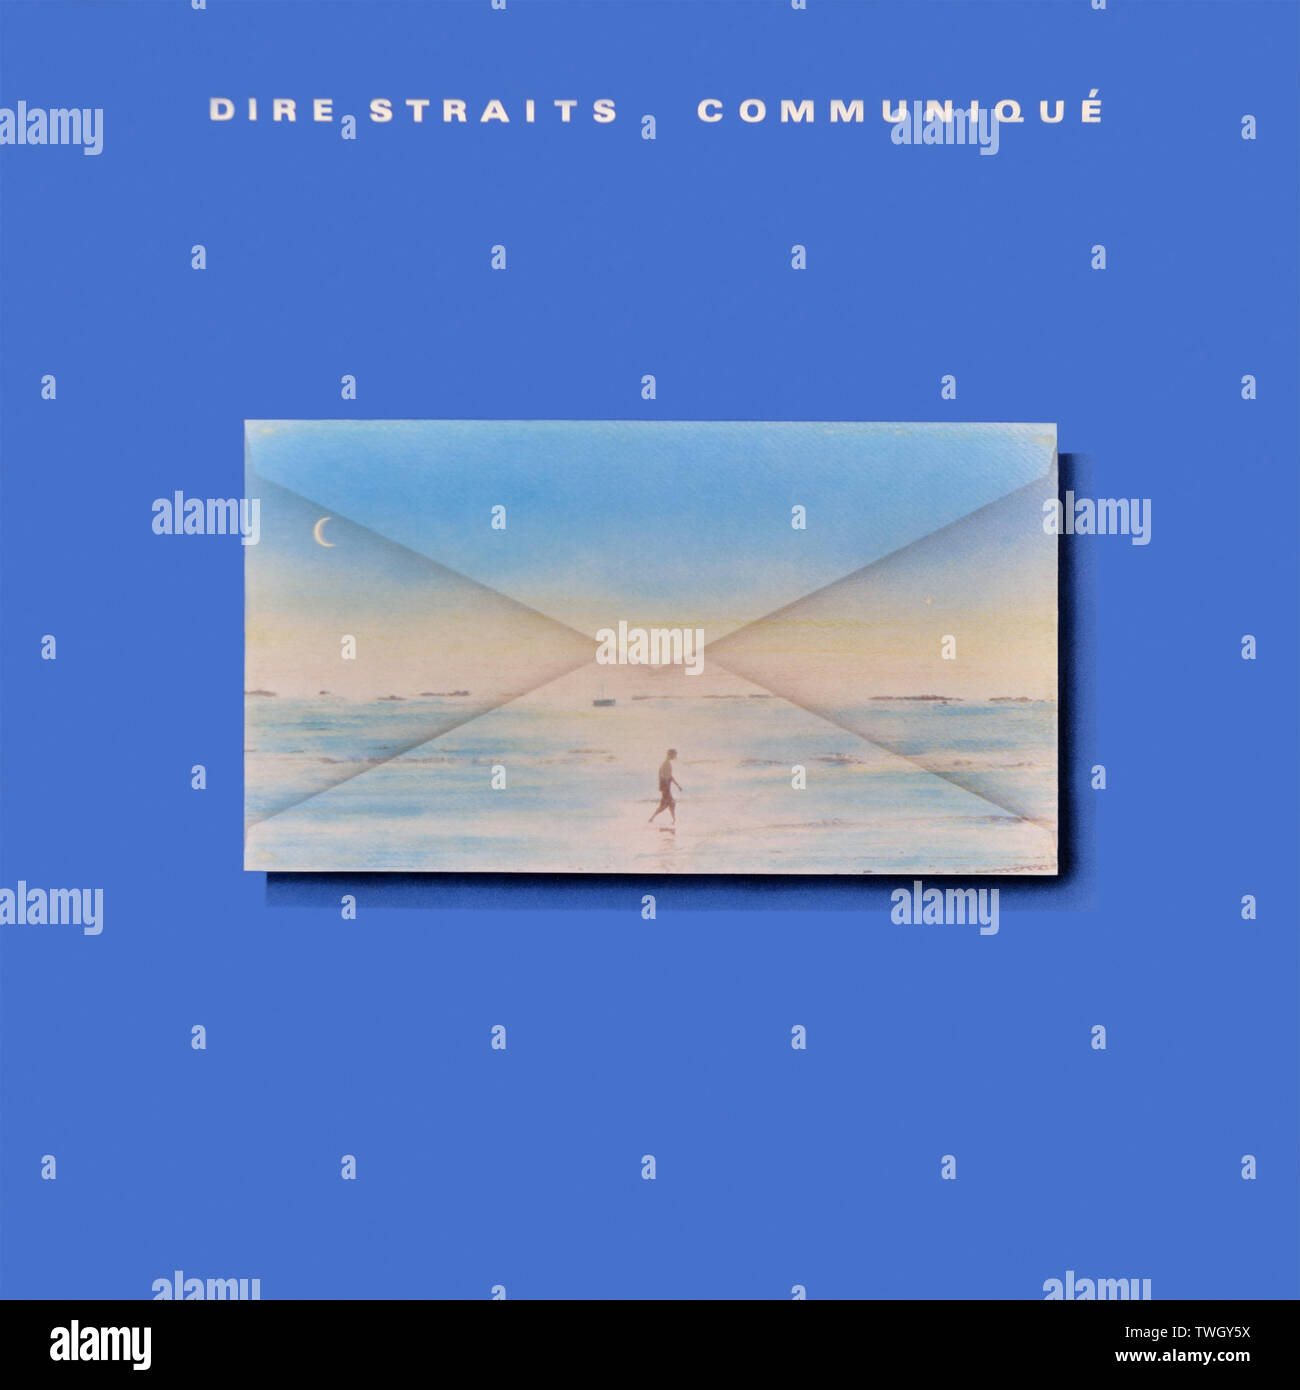 Dire Straits - pochette originale de l'album en vinyle - Communiqué - 1979 Banque D'Images